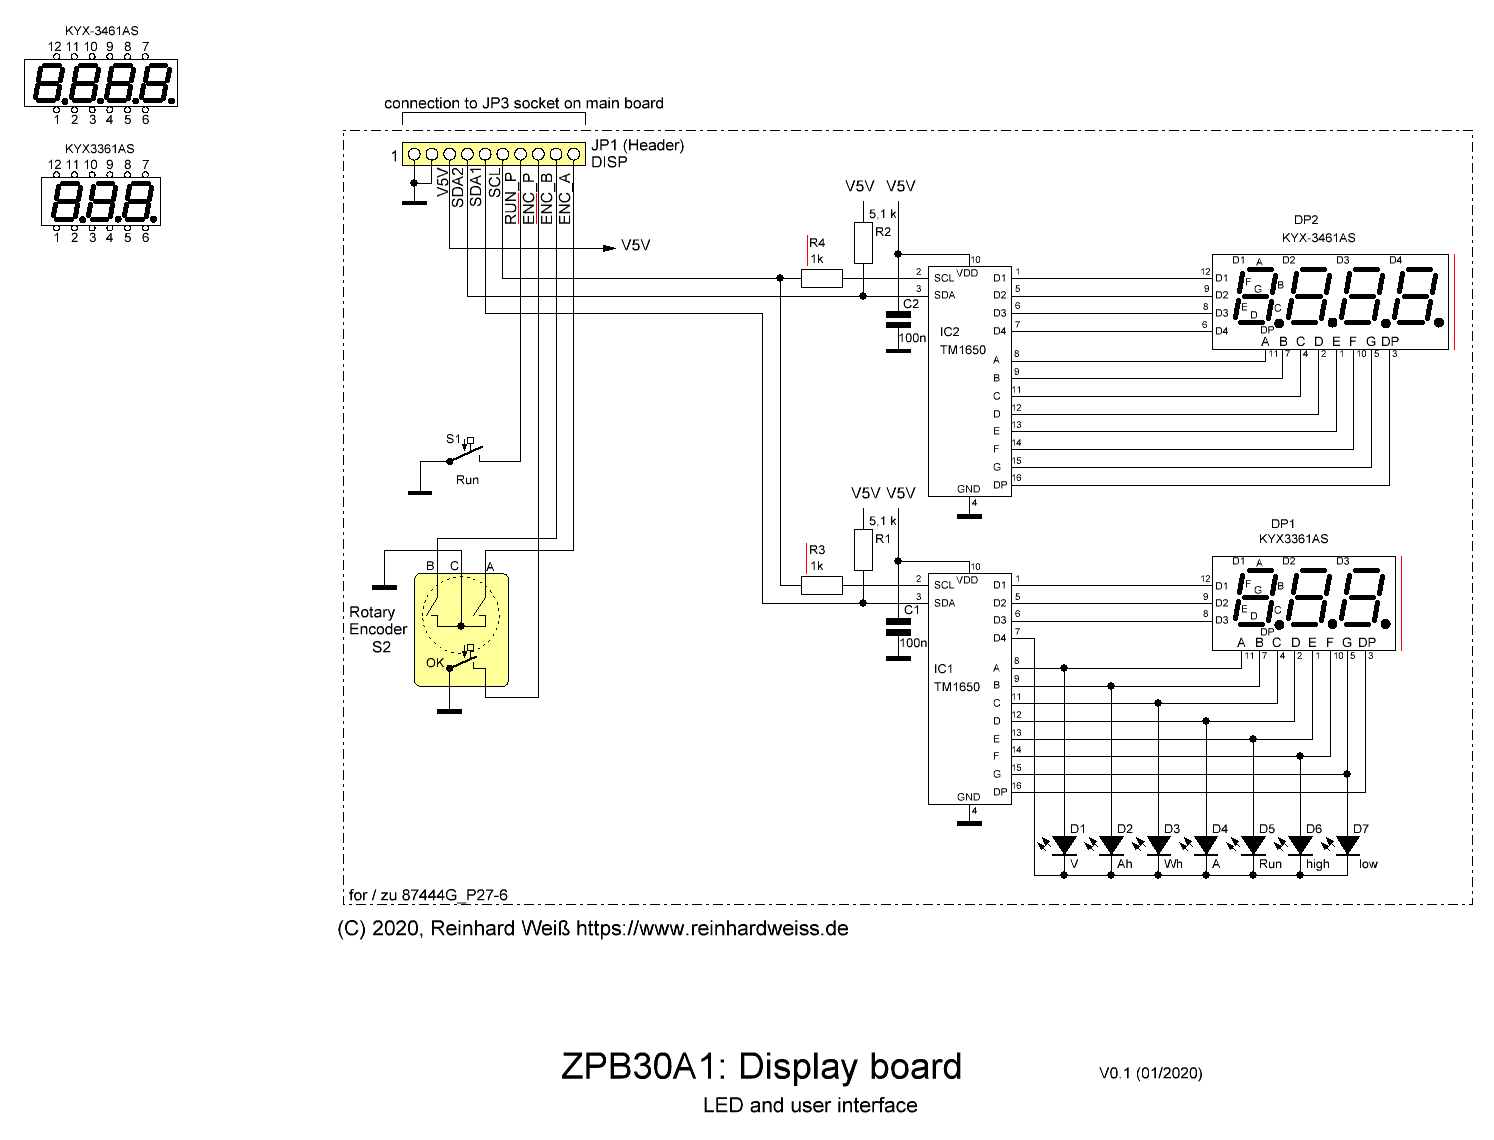 ZPB30A1 schematic